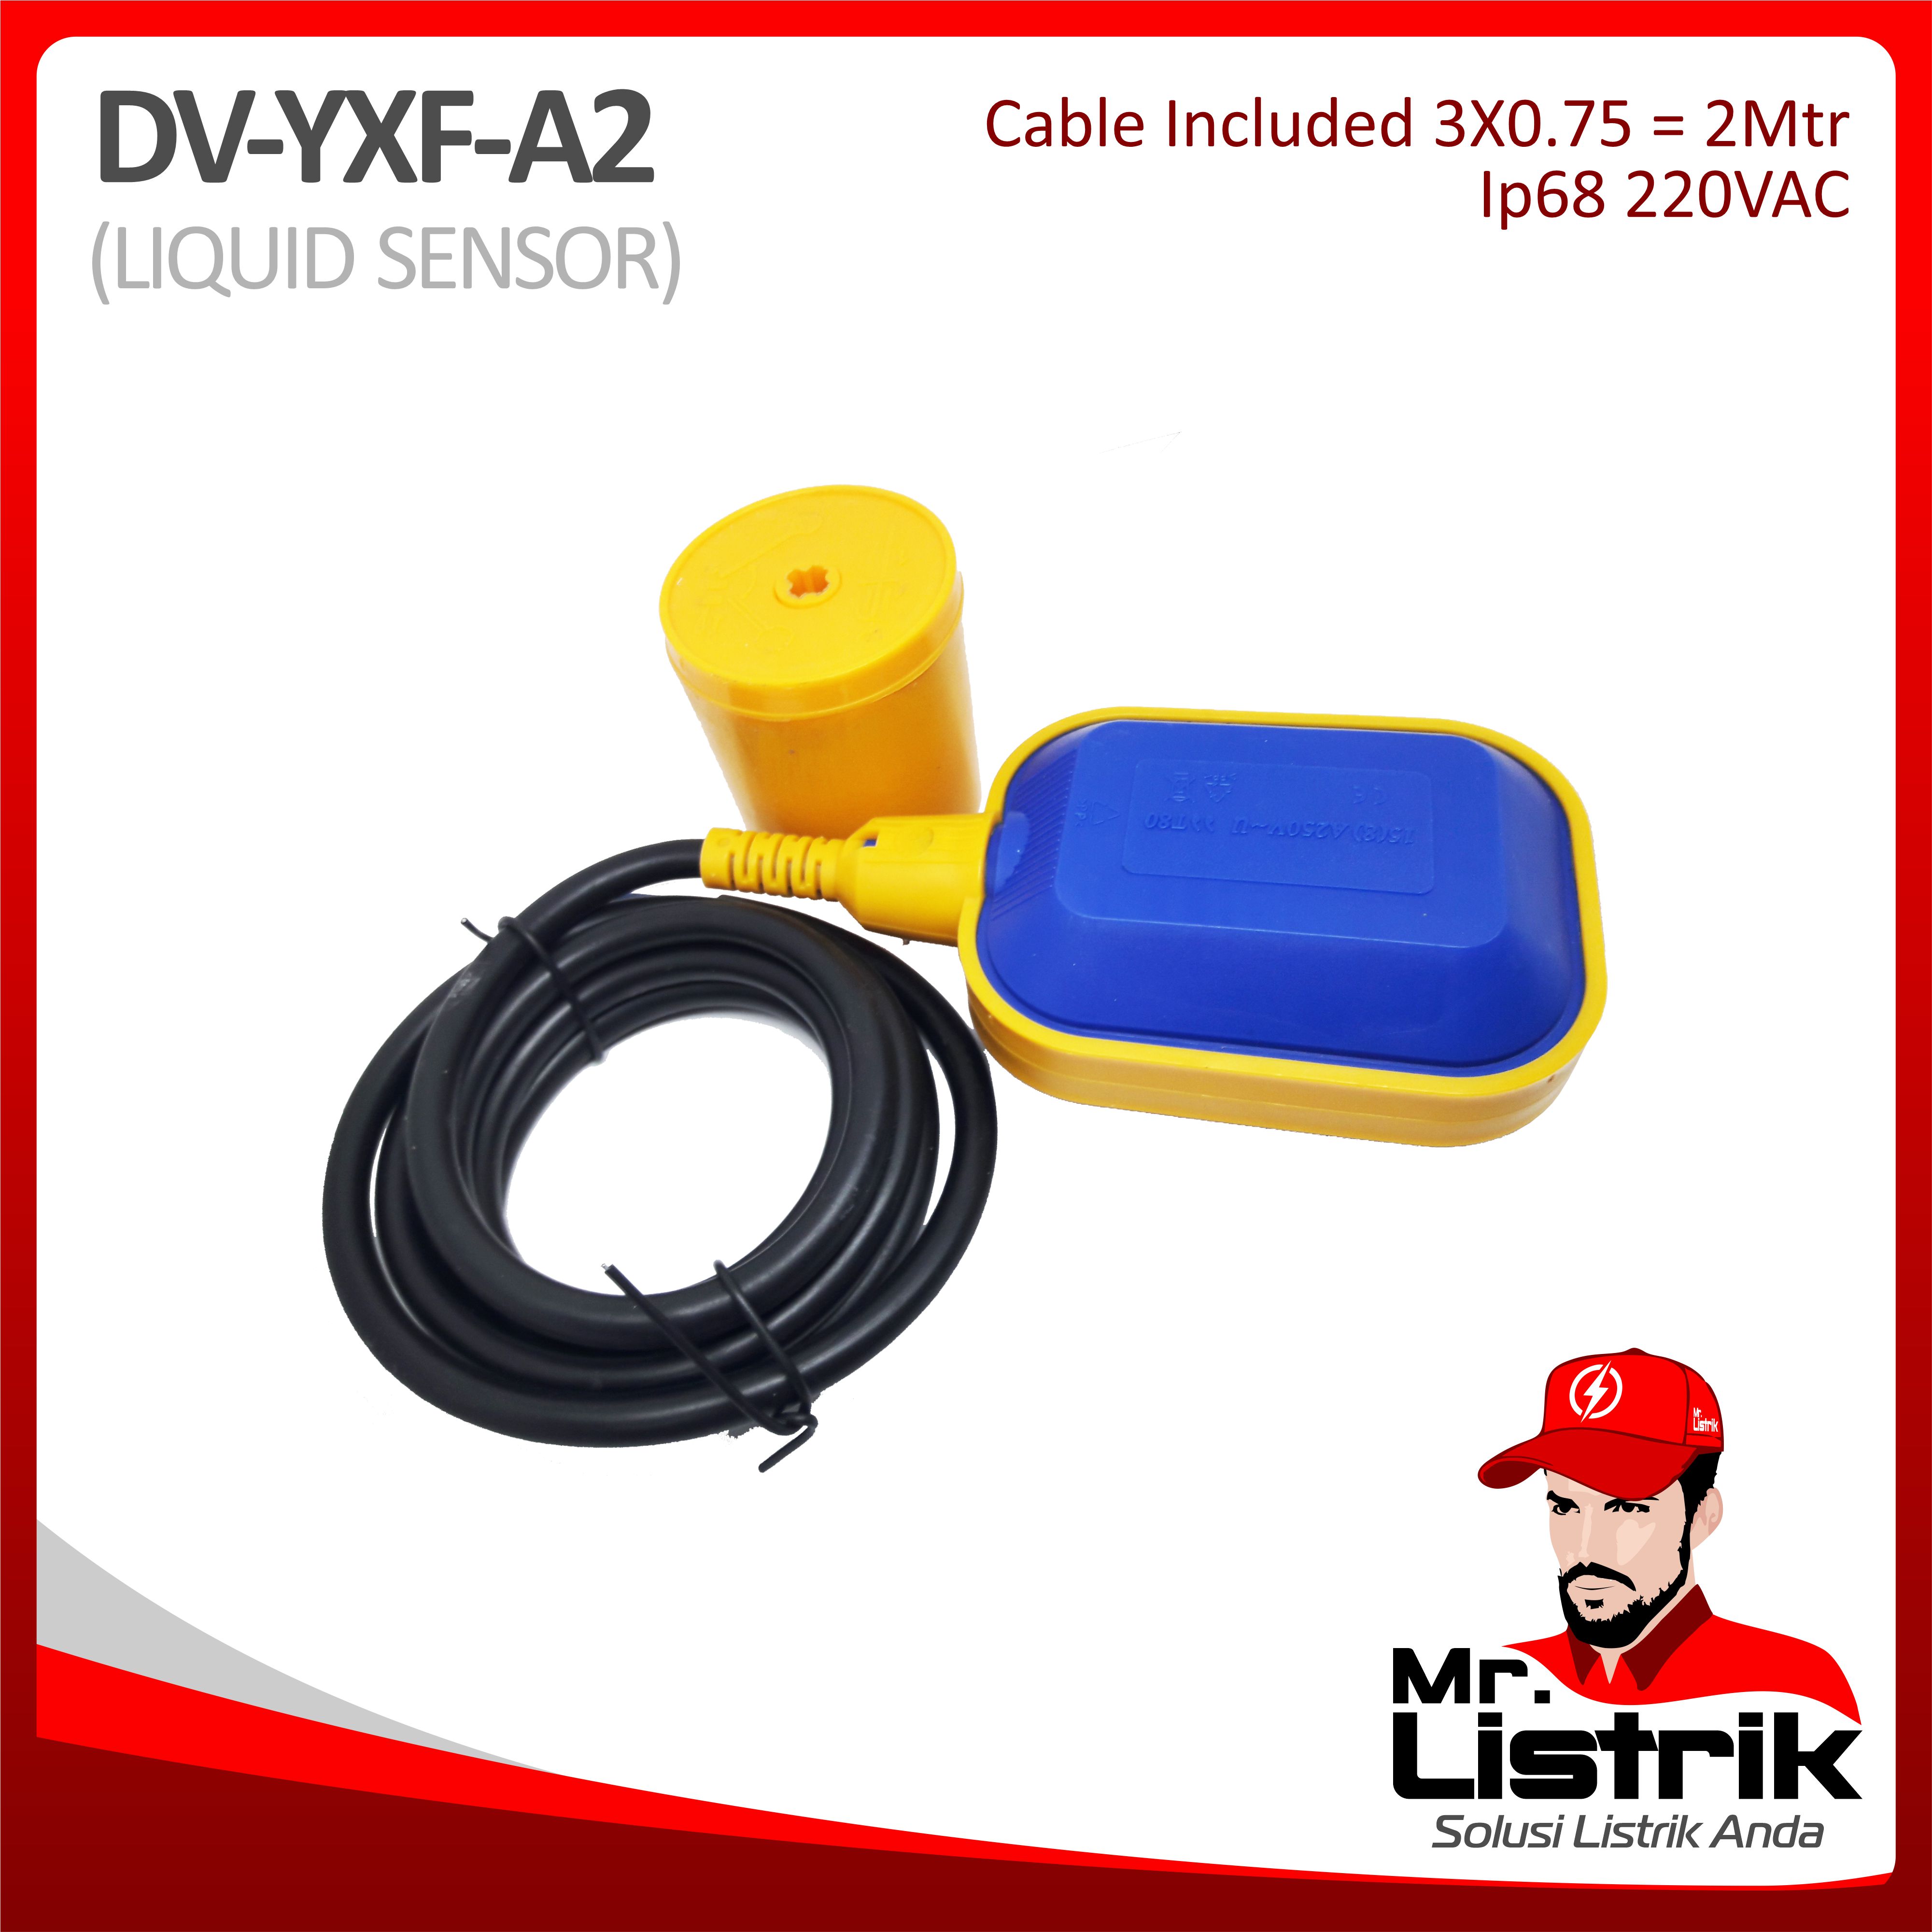 Liquid Sensor IP68 Cable 2 Meter DV YXF-A2